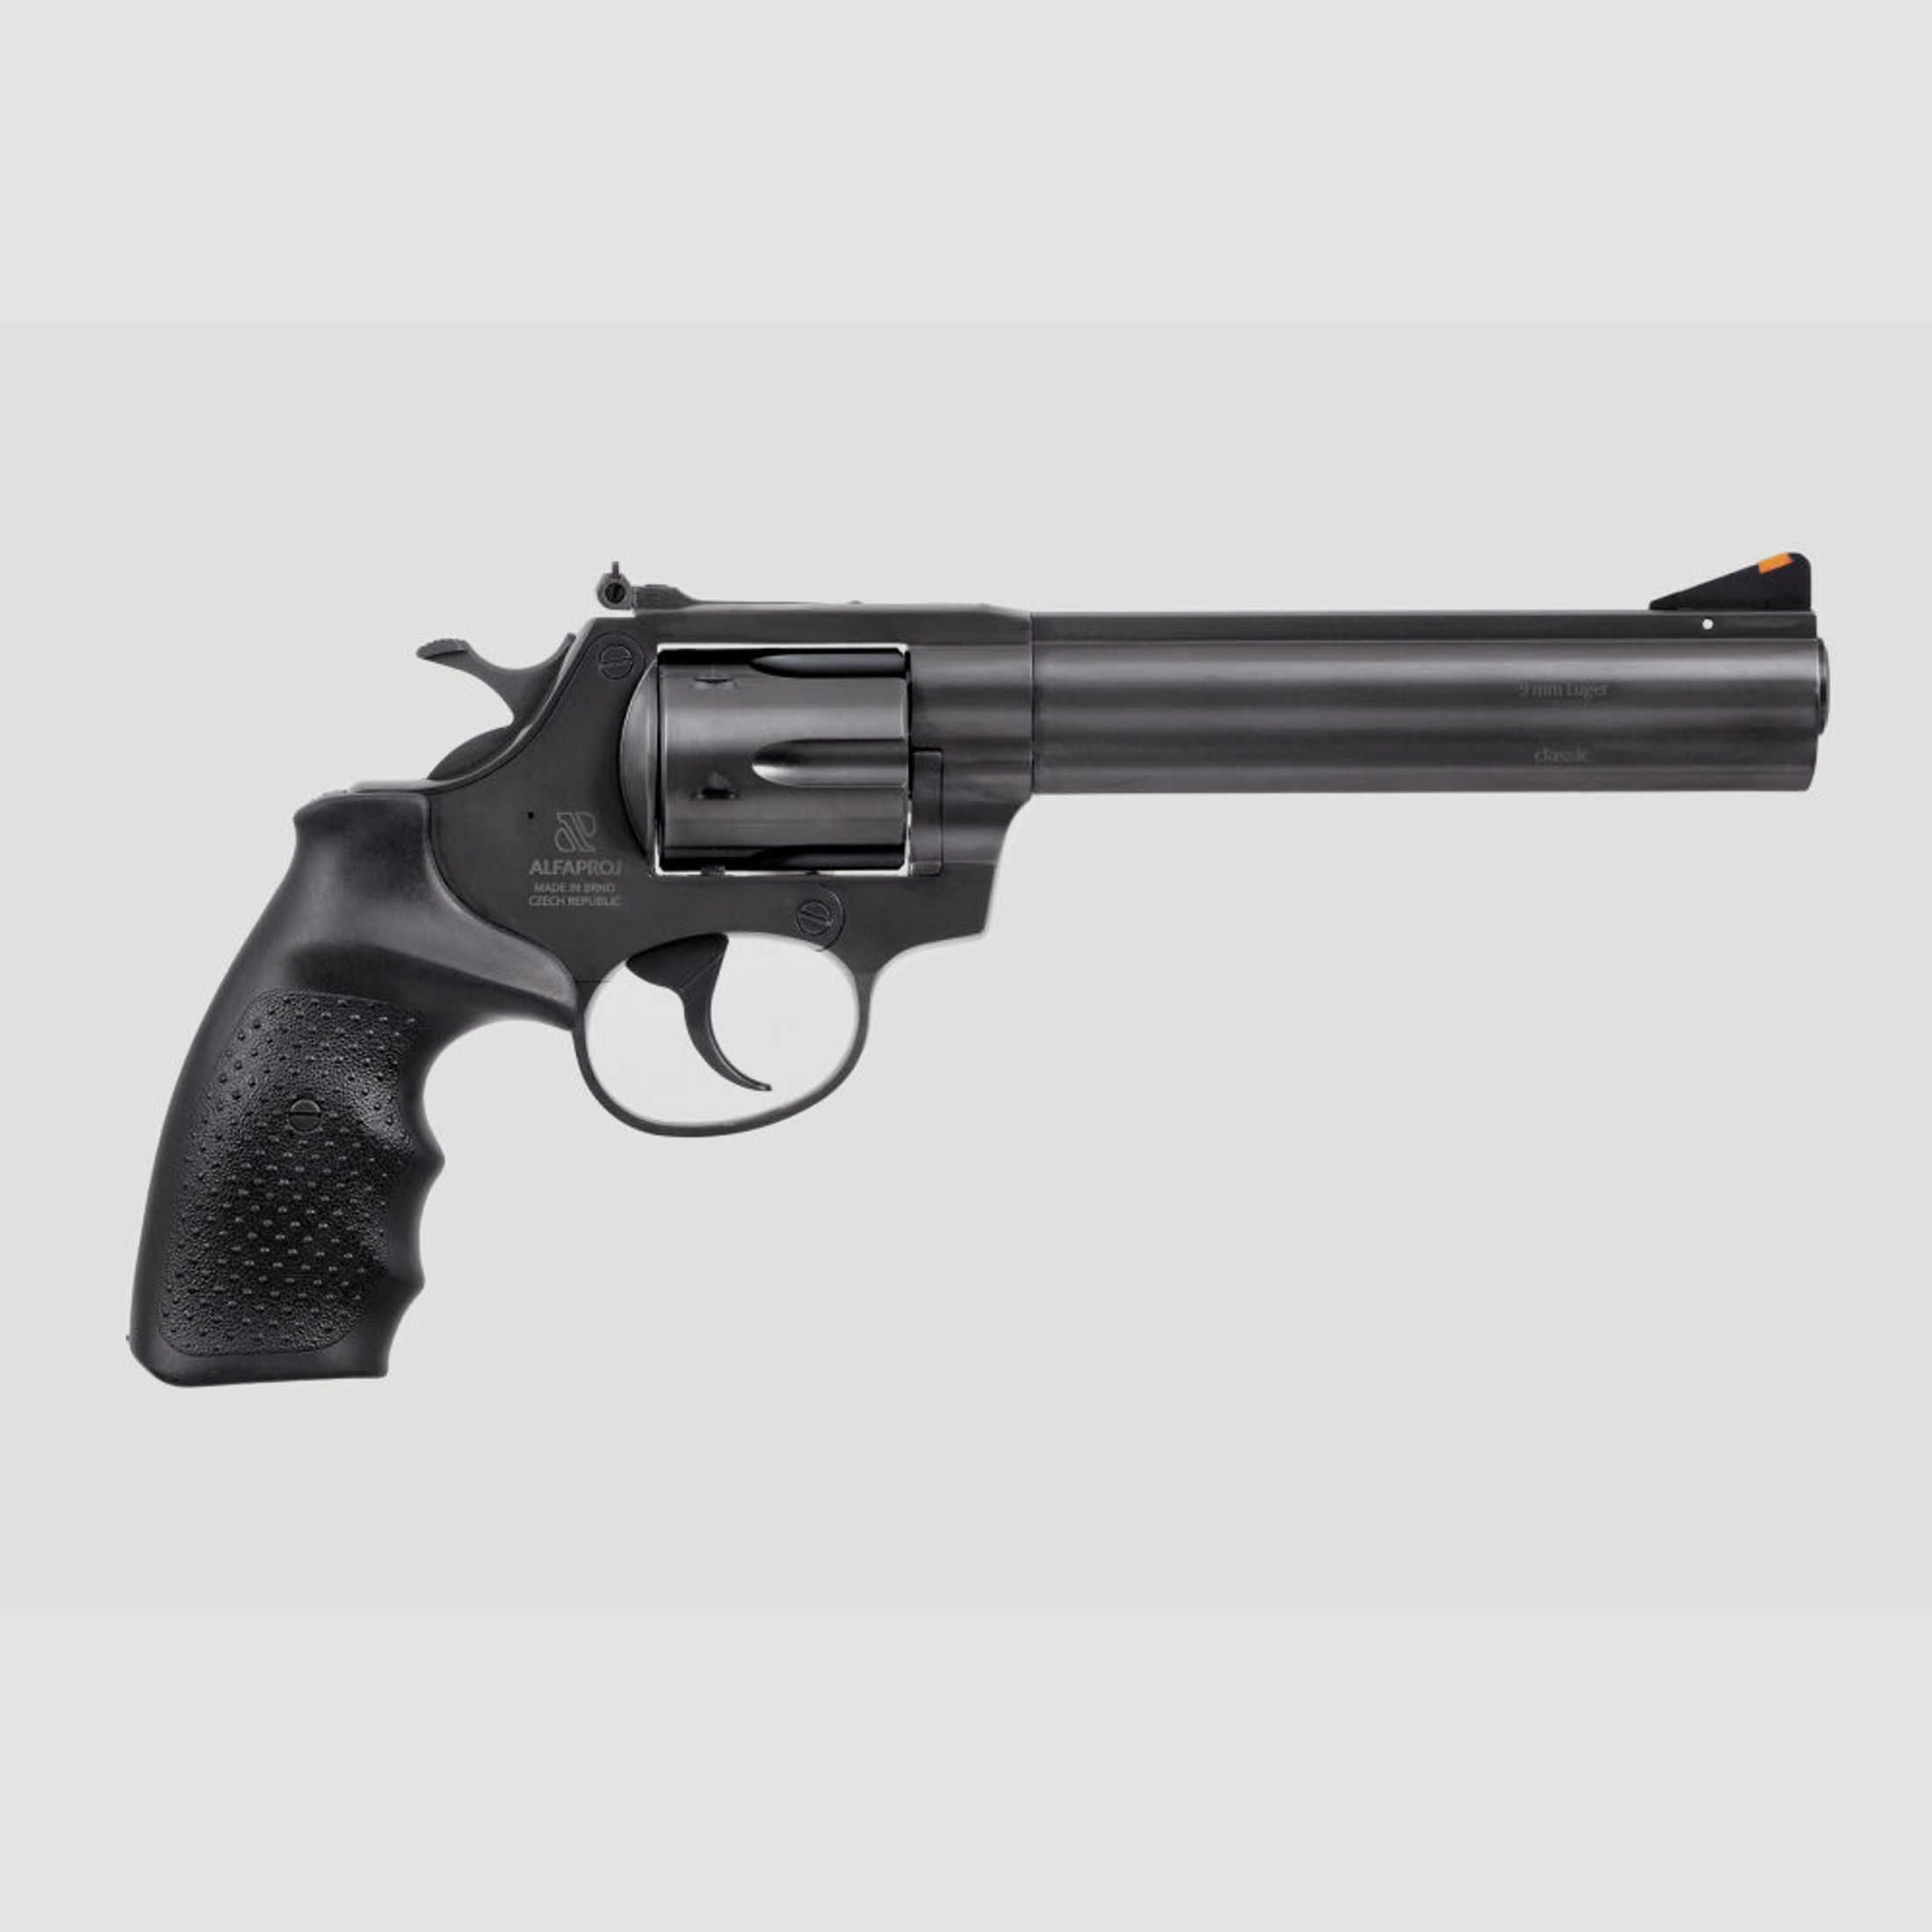 Alfa Proj	 9261 blued 6" (6 Zoll) Brüniert 9mm Luger Revolver